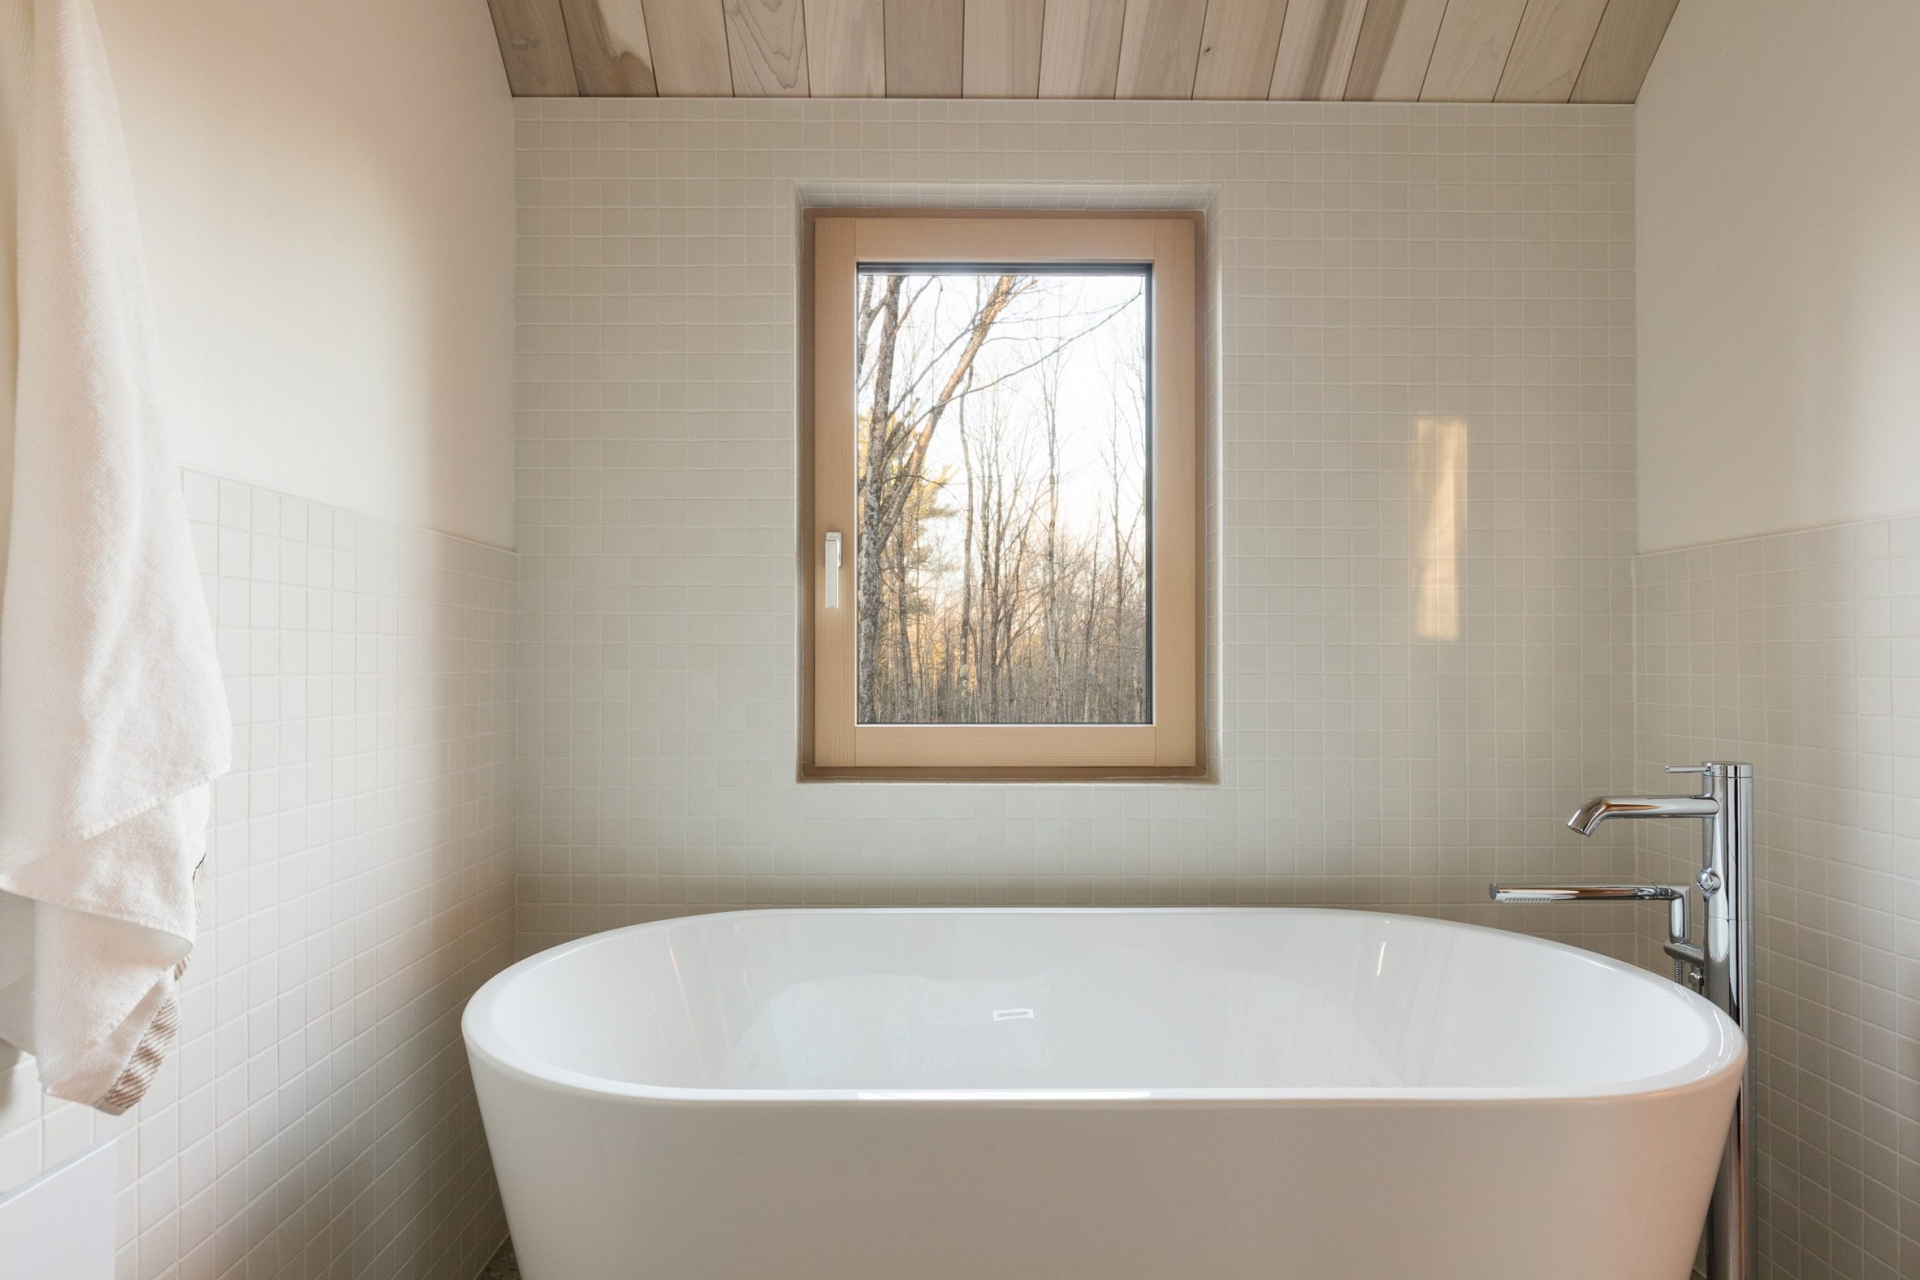 Phòng tắm được lát gạch mosaic vuông màu xám nhẹ nhàng, chiếc bồn tắm nằm bằng sứ bên dưới ô cửa sổ cho chủ nhân cảm giác thư giãn thoải mái. 